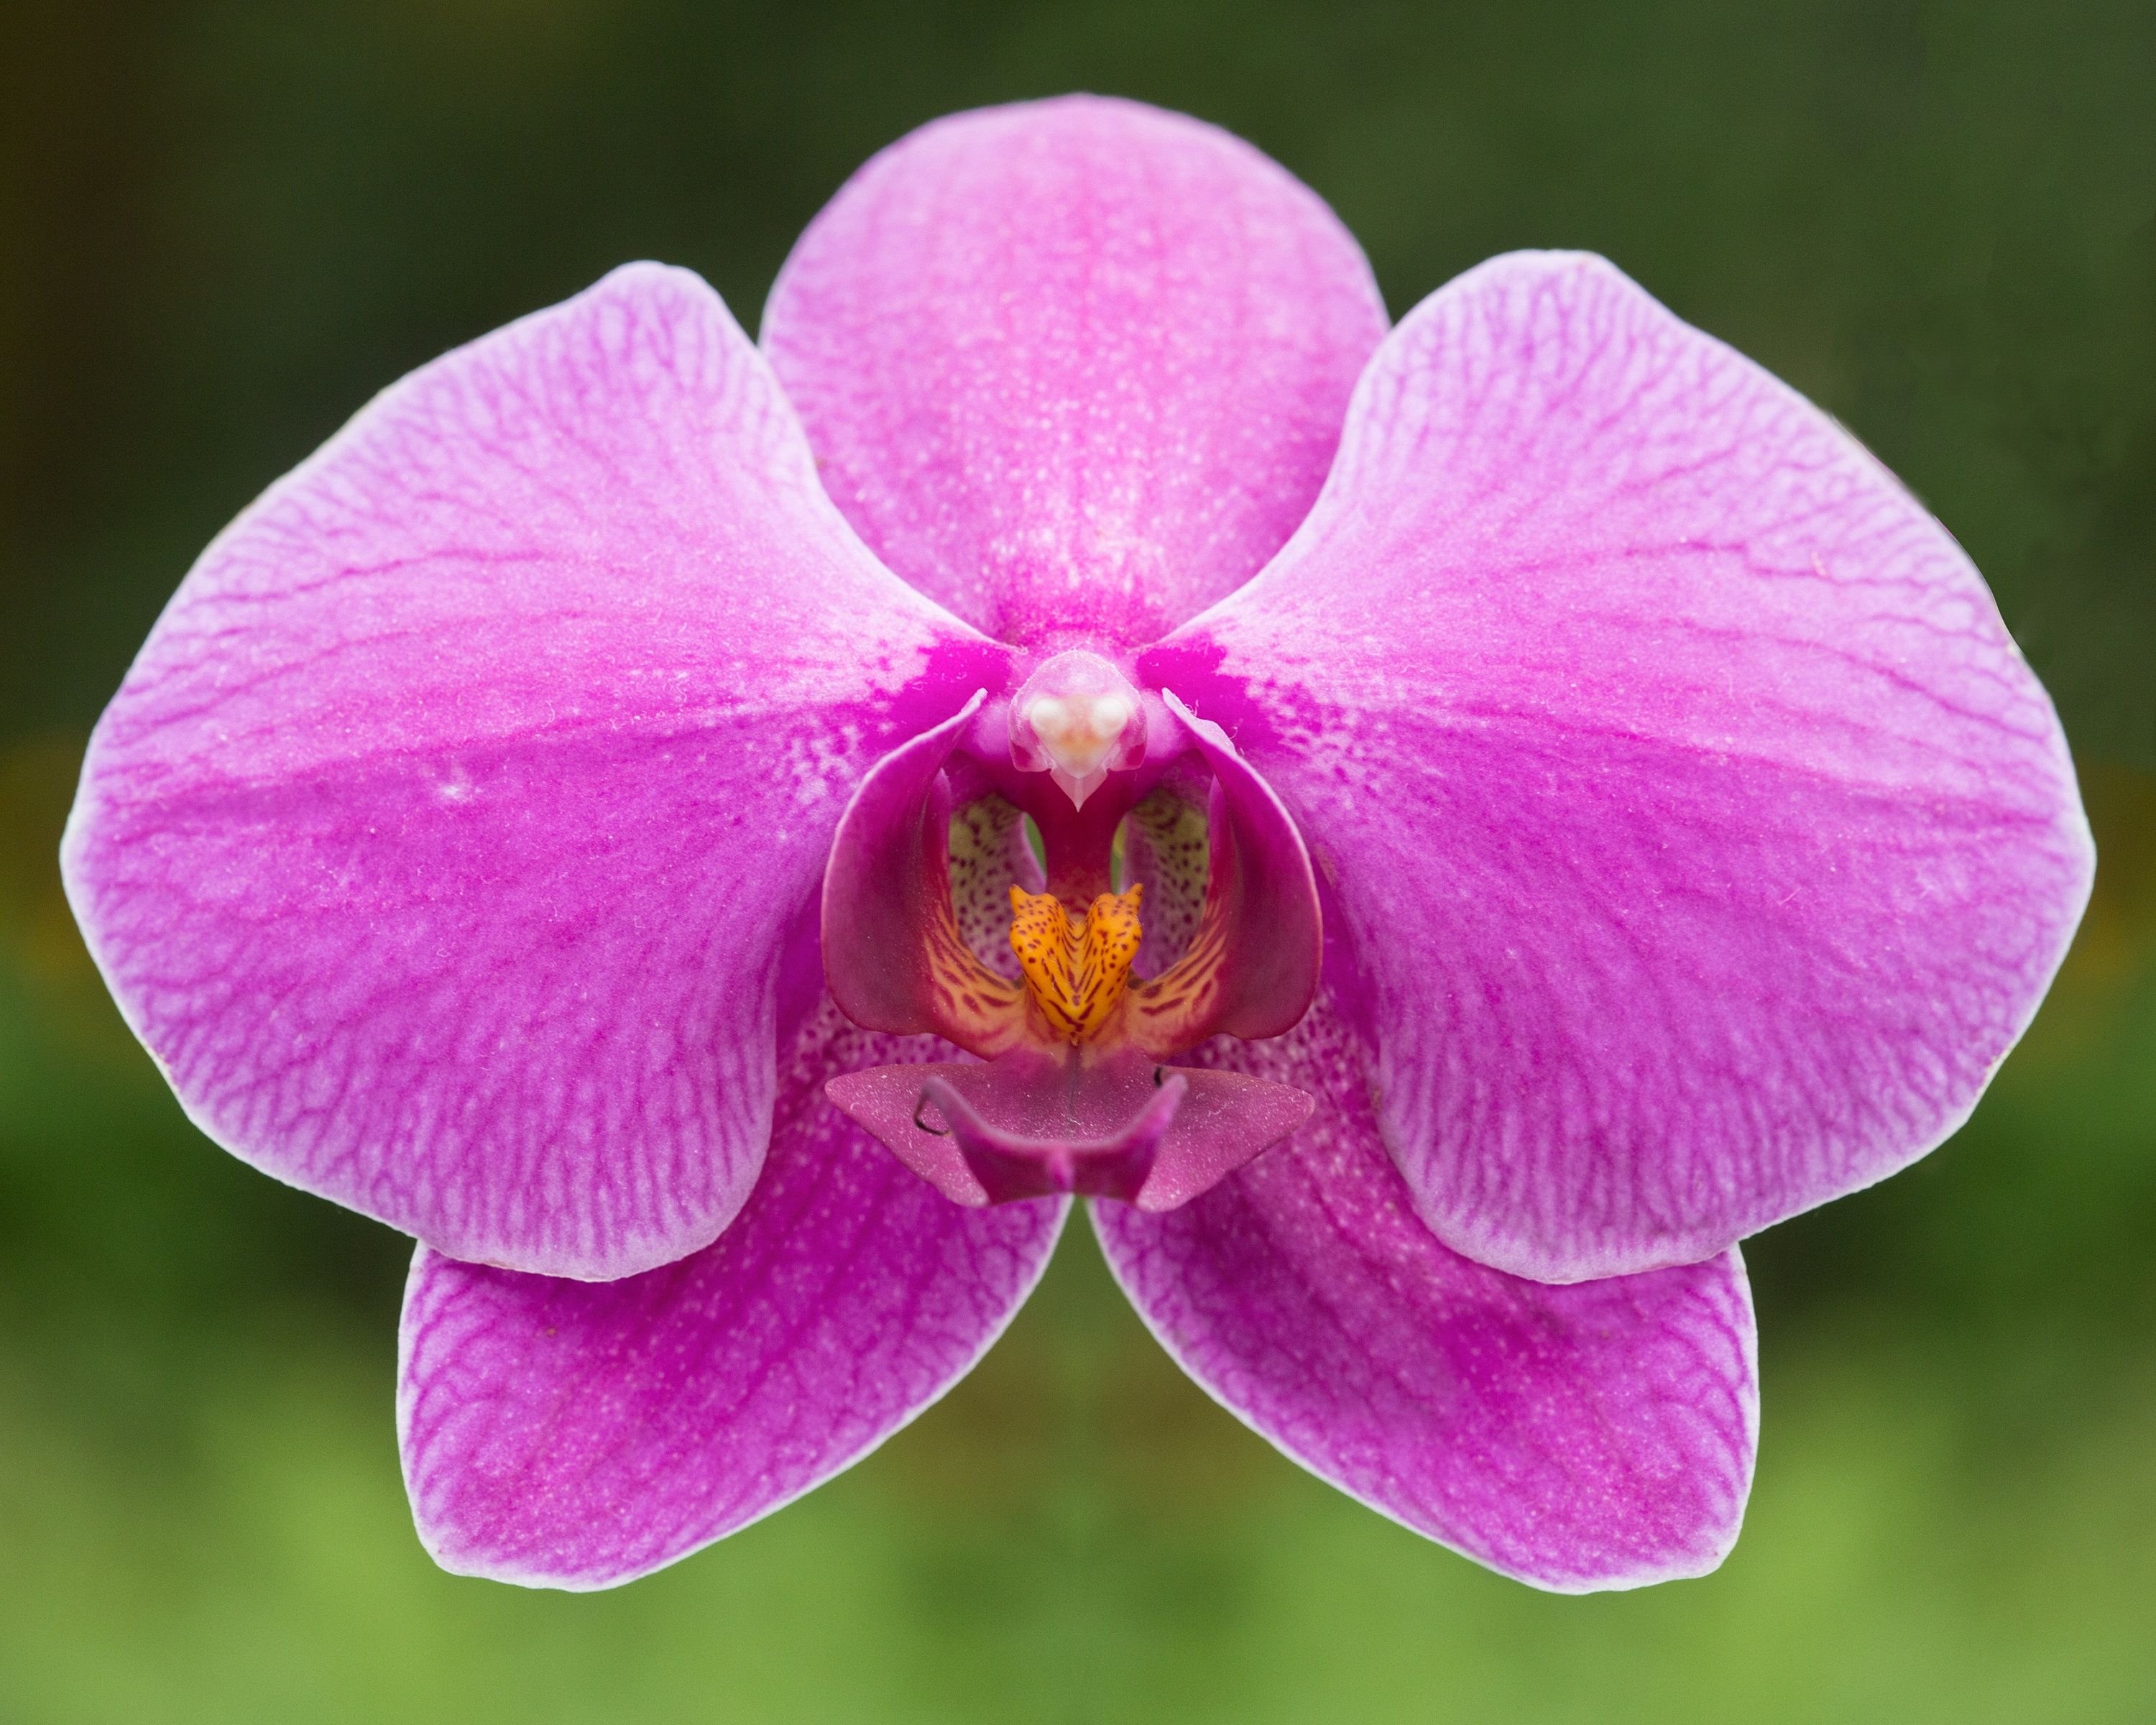 Flowers orchids. Орхидные Орхидные. Орхидея фаленопсис Шоупис. Орхидея Мандала.